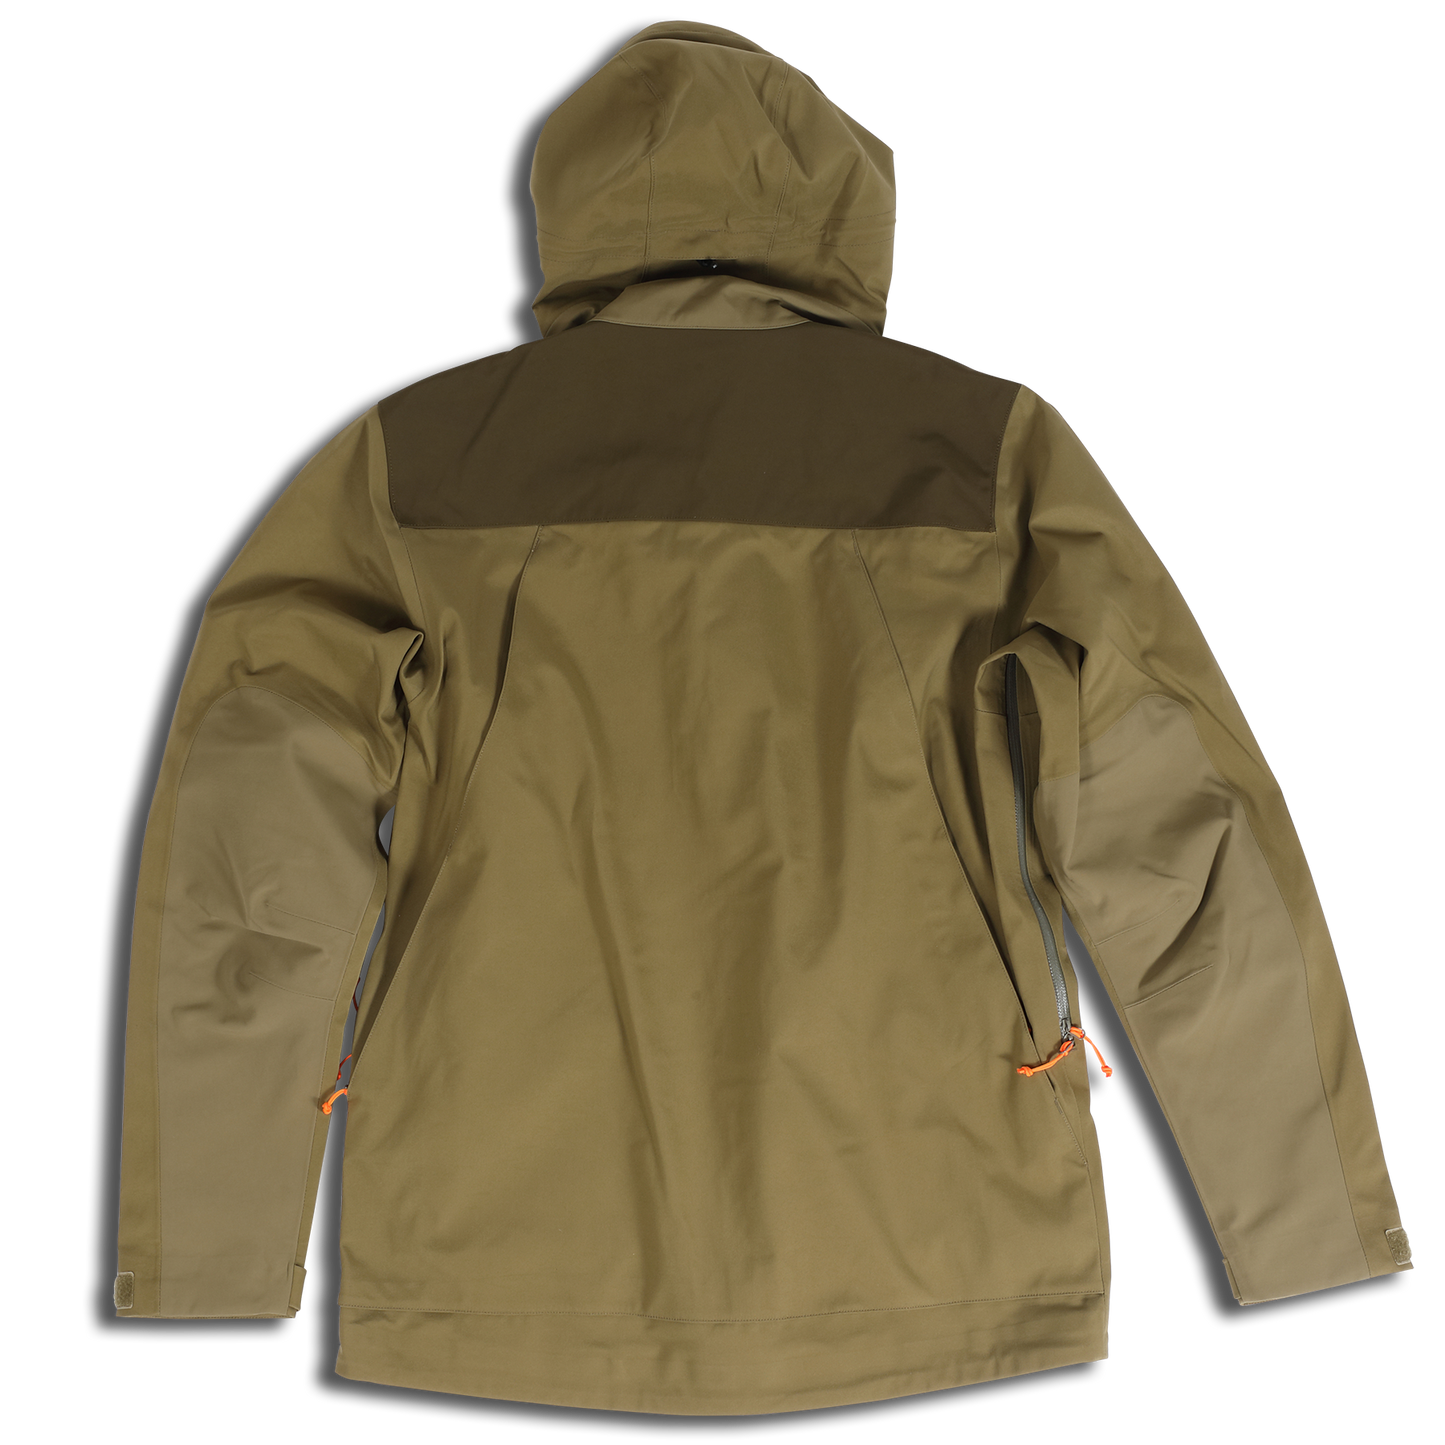 ORVIS Toughshell Waterproof Upland Jacket